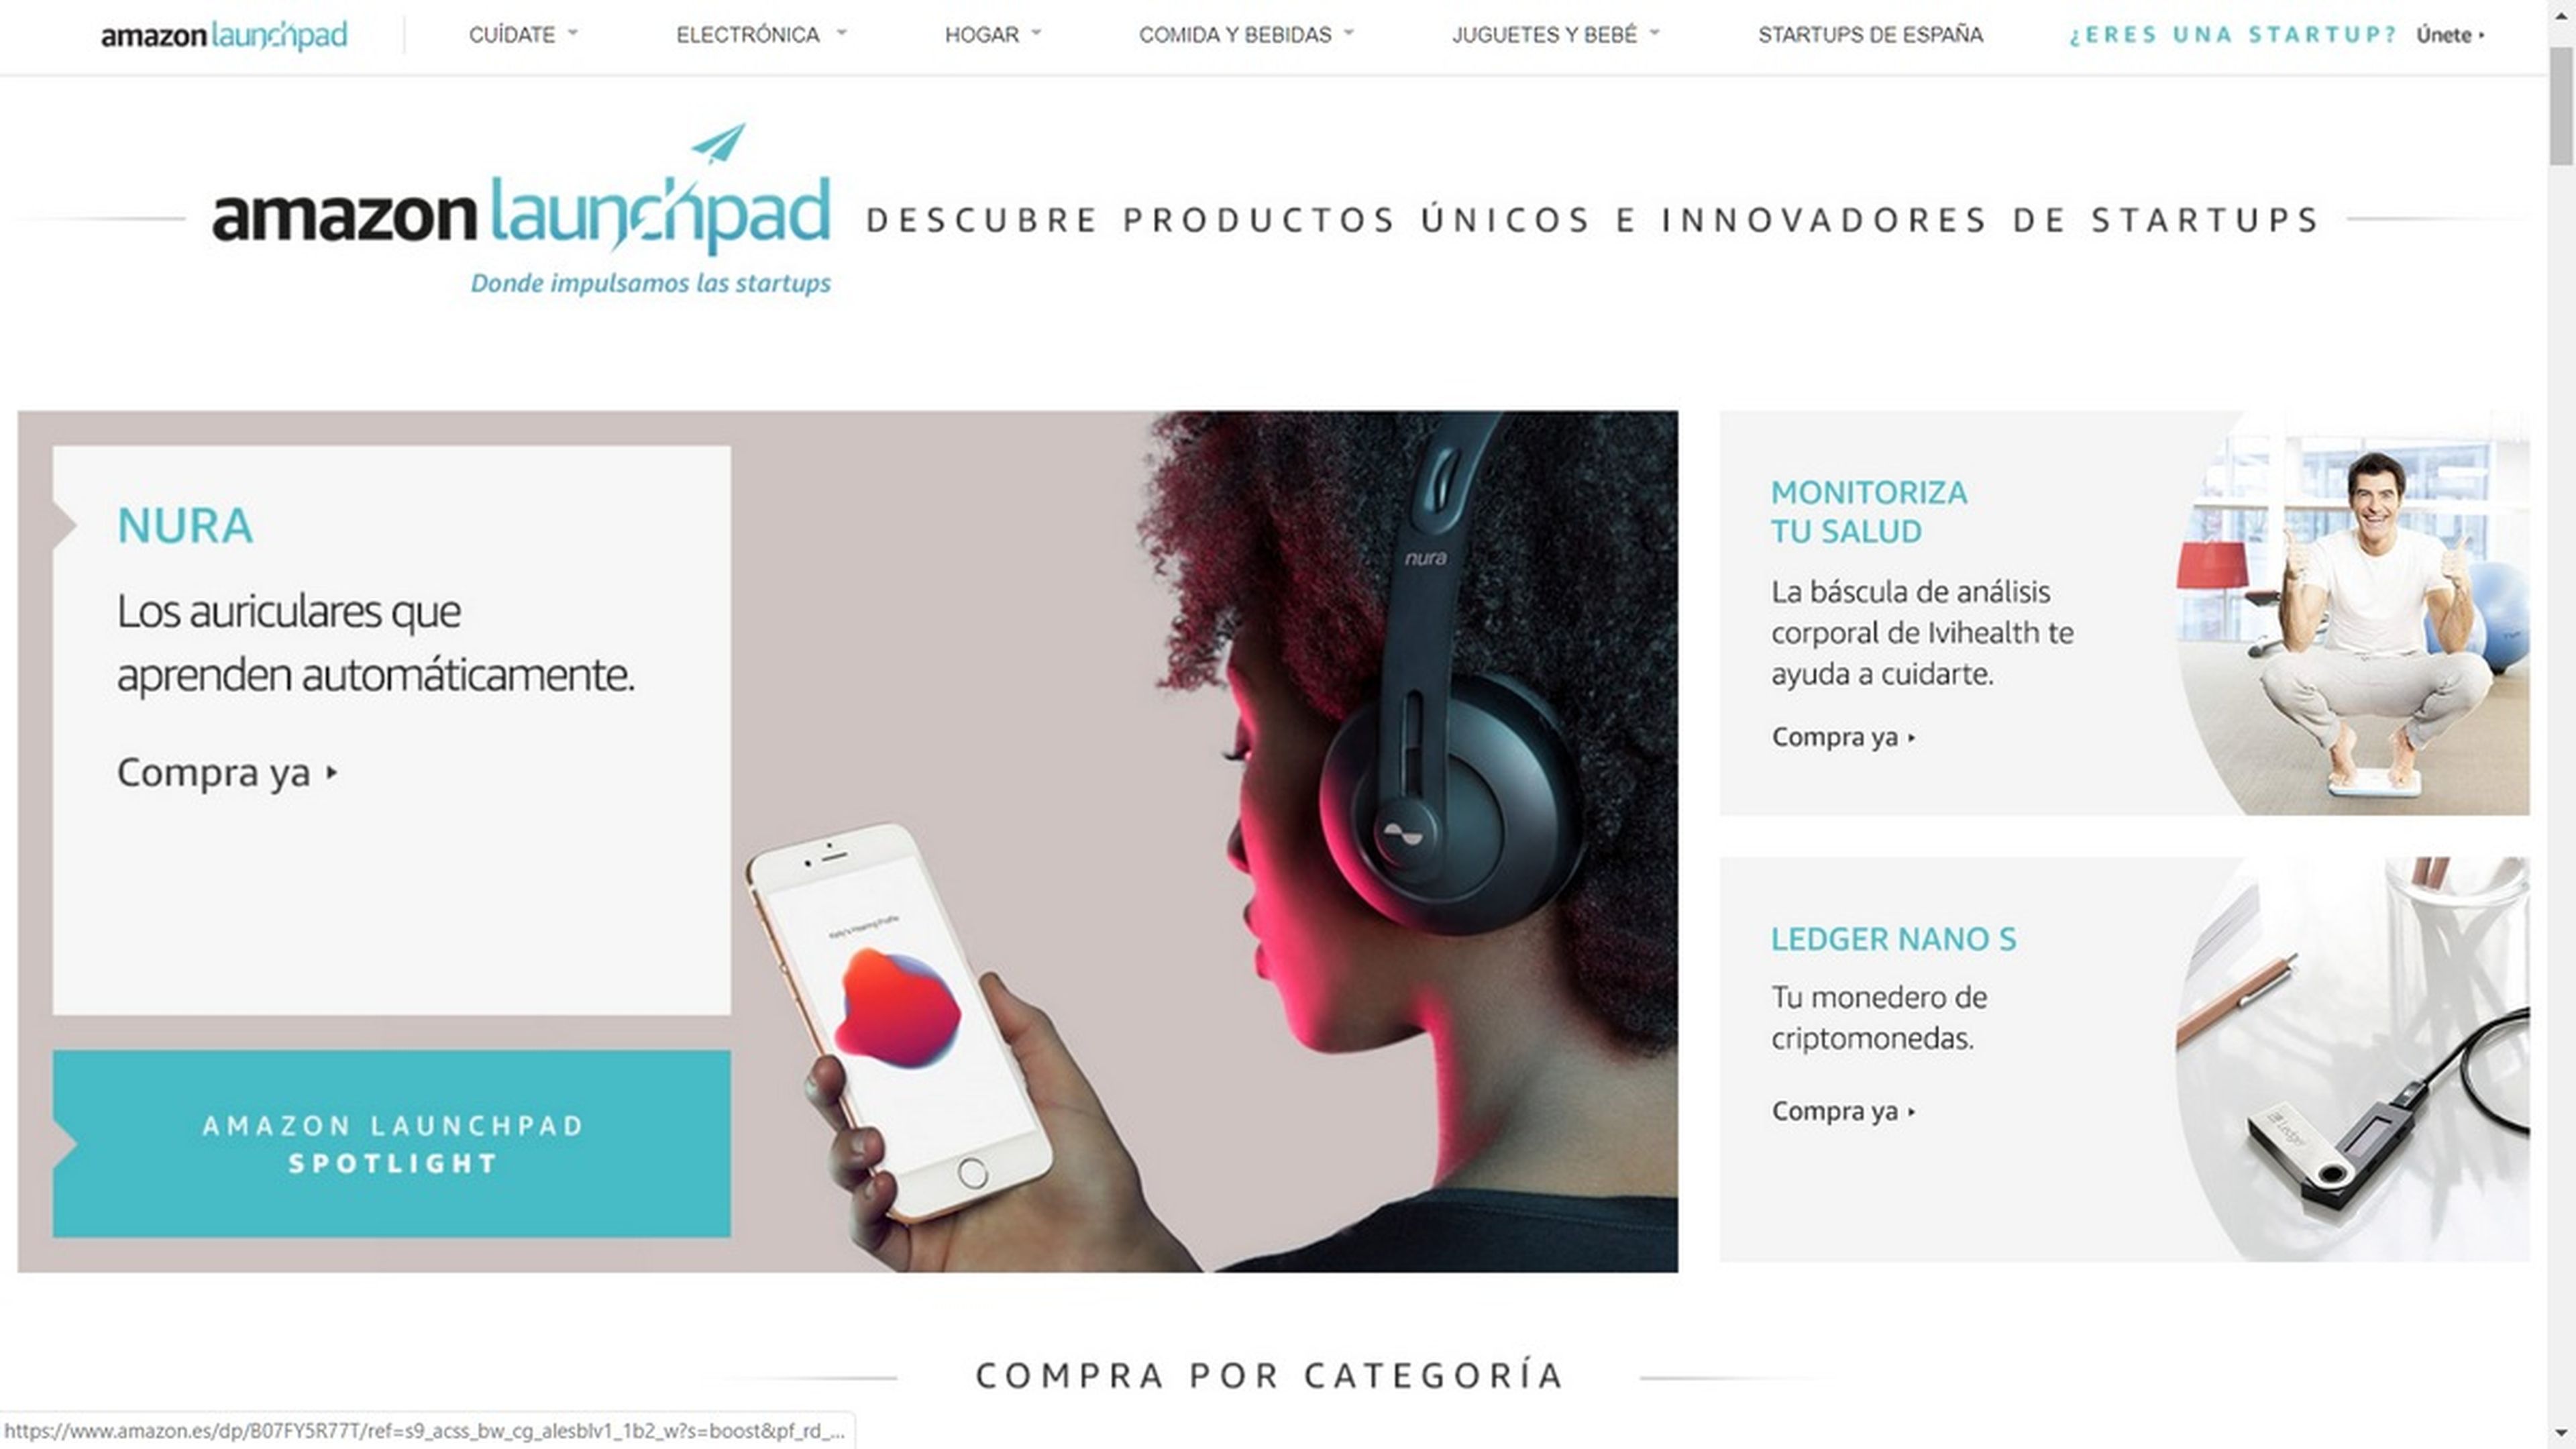 Amazon Launchpad llega a España, compra productos de KickStarter y Startups en Amazon